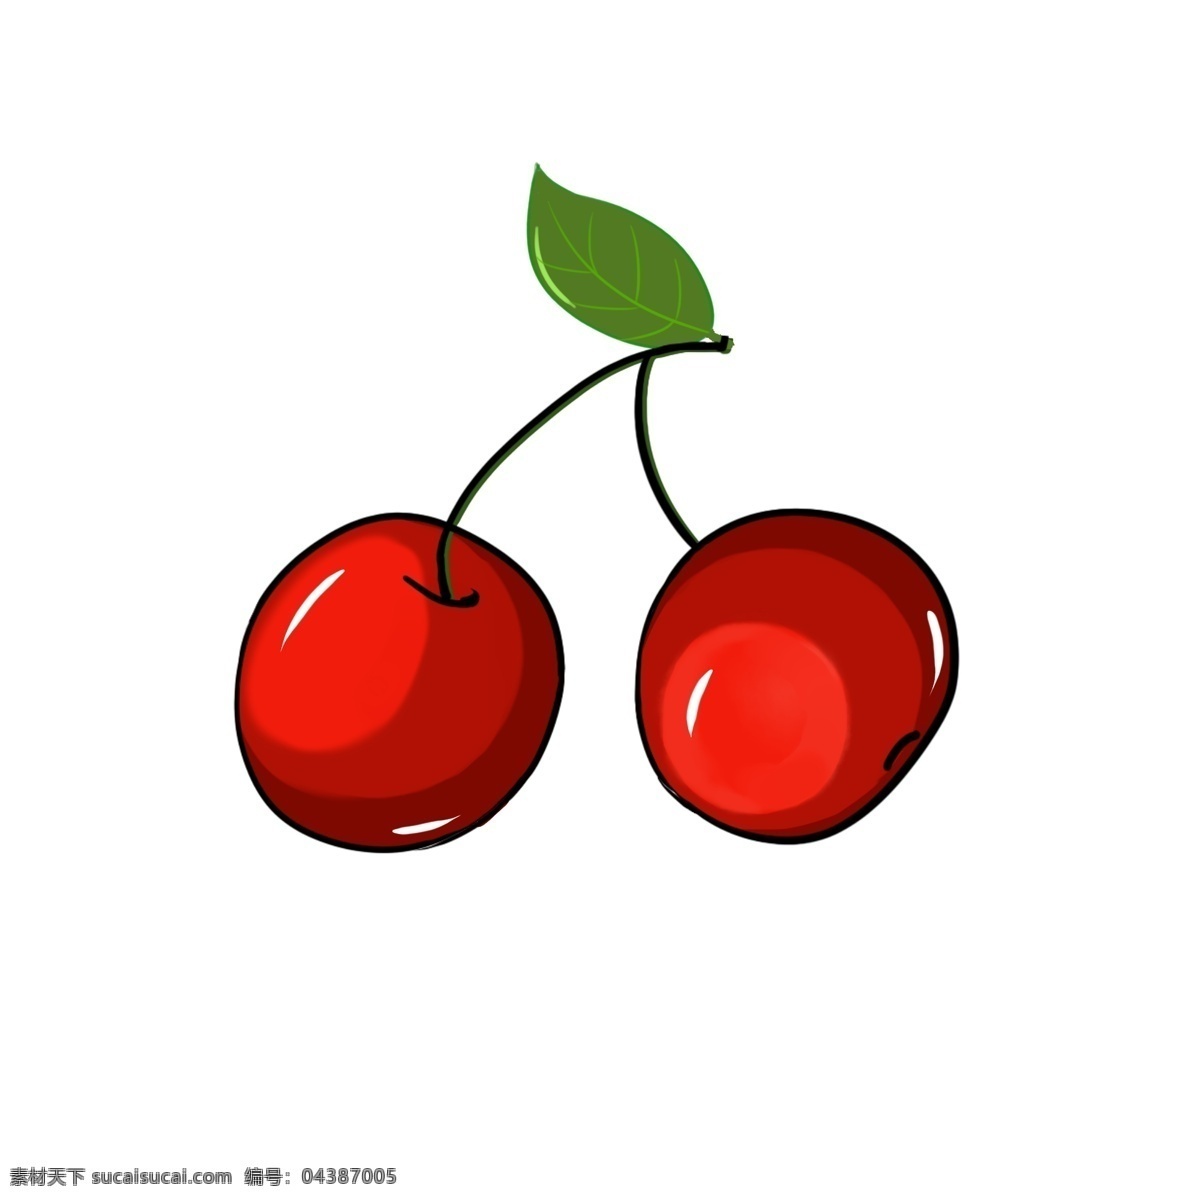 水果 鲜果 生鲜水果 健康 绿色 车厘子 大樱桃 有机水果 绿色水果 生物世界 水果素材 生活用品